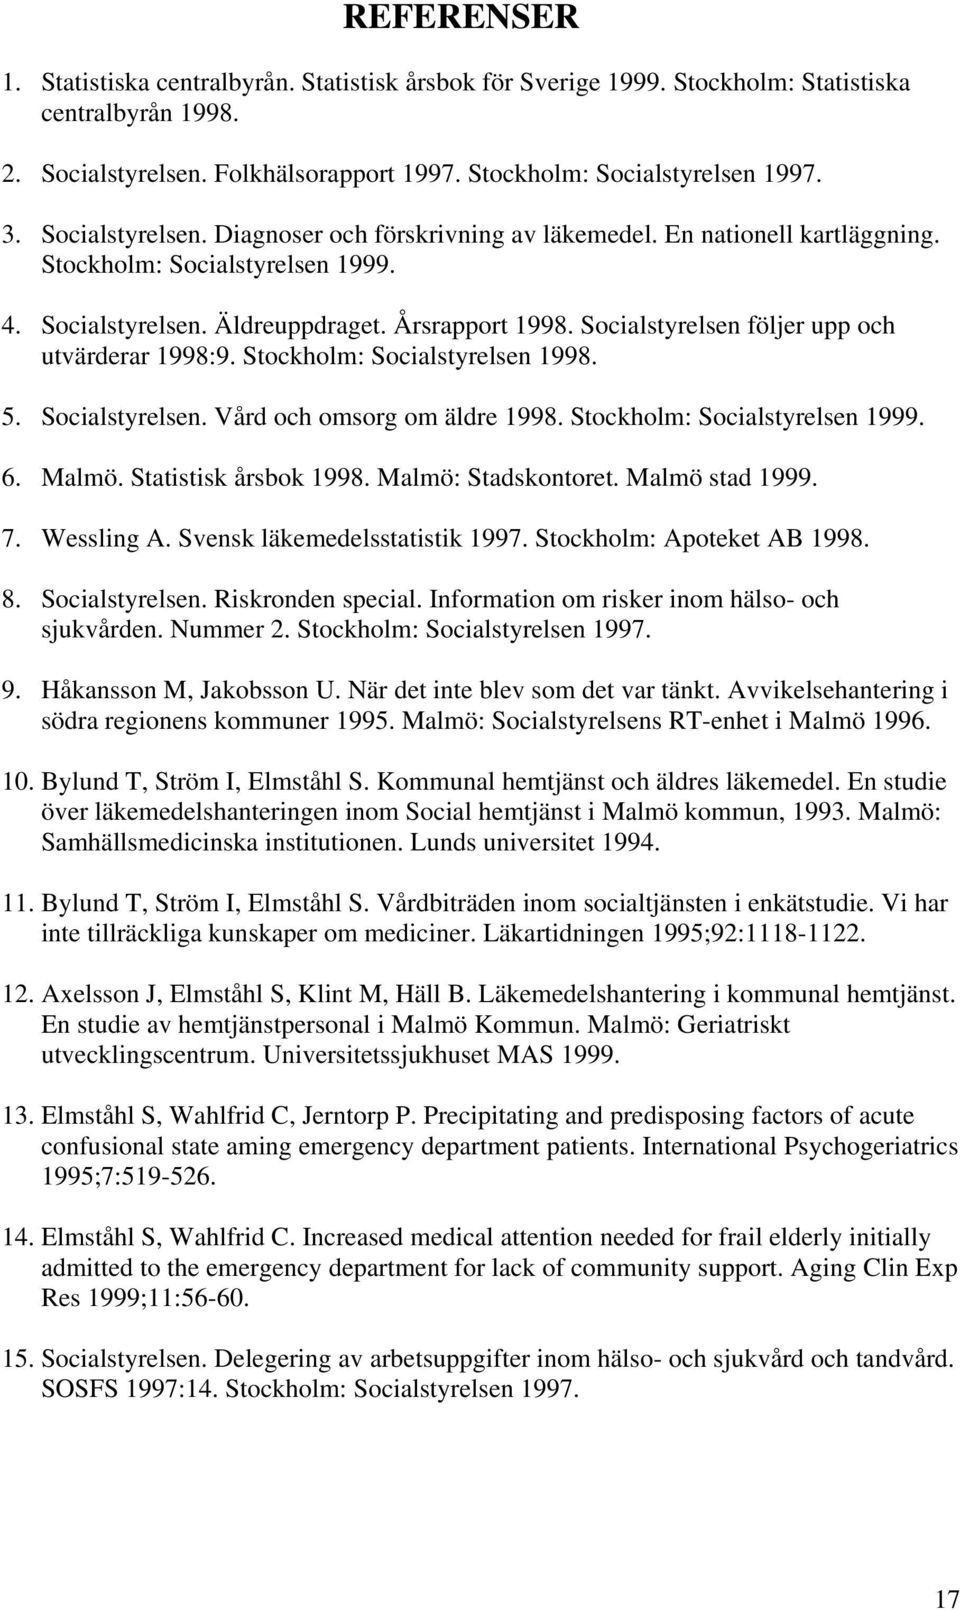 Socialstyrelsen följer upp och utvärderar 1998:9. Stockholm: Socialstyrelsen 1998. 5. Socialstyrelsen. Vård och omsorg om äldre 1998. Stockholm: Socialstyrelsen 1999. 6. Malmö. Statistisk årsbok 1998.